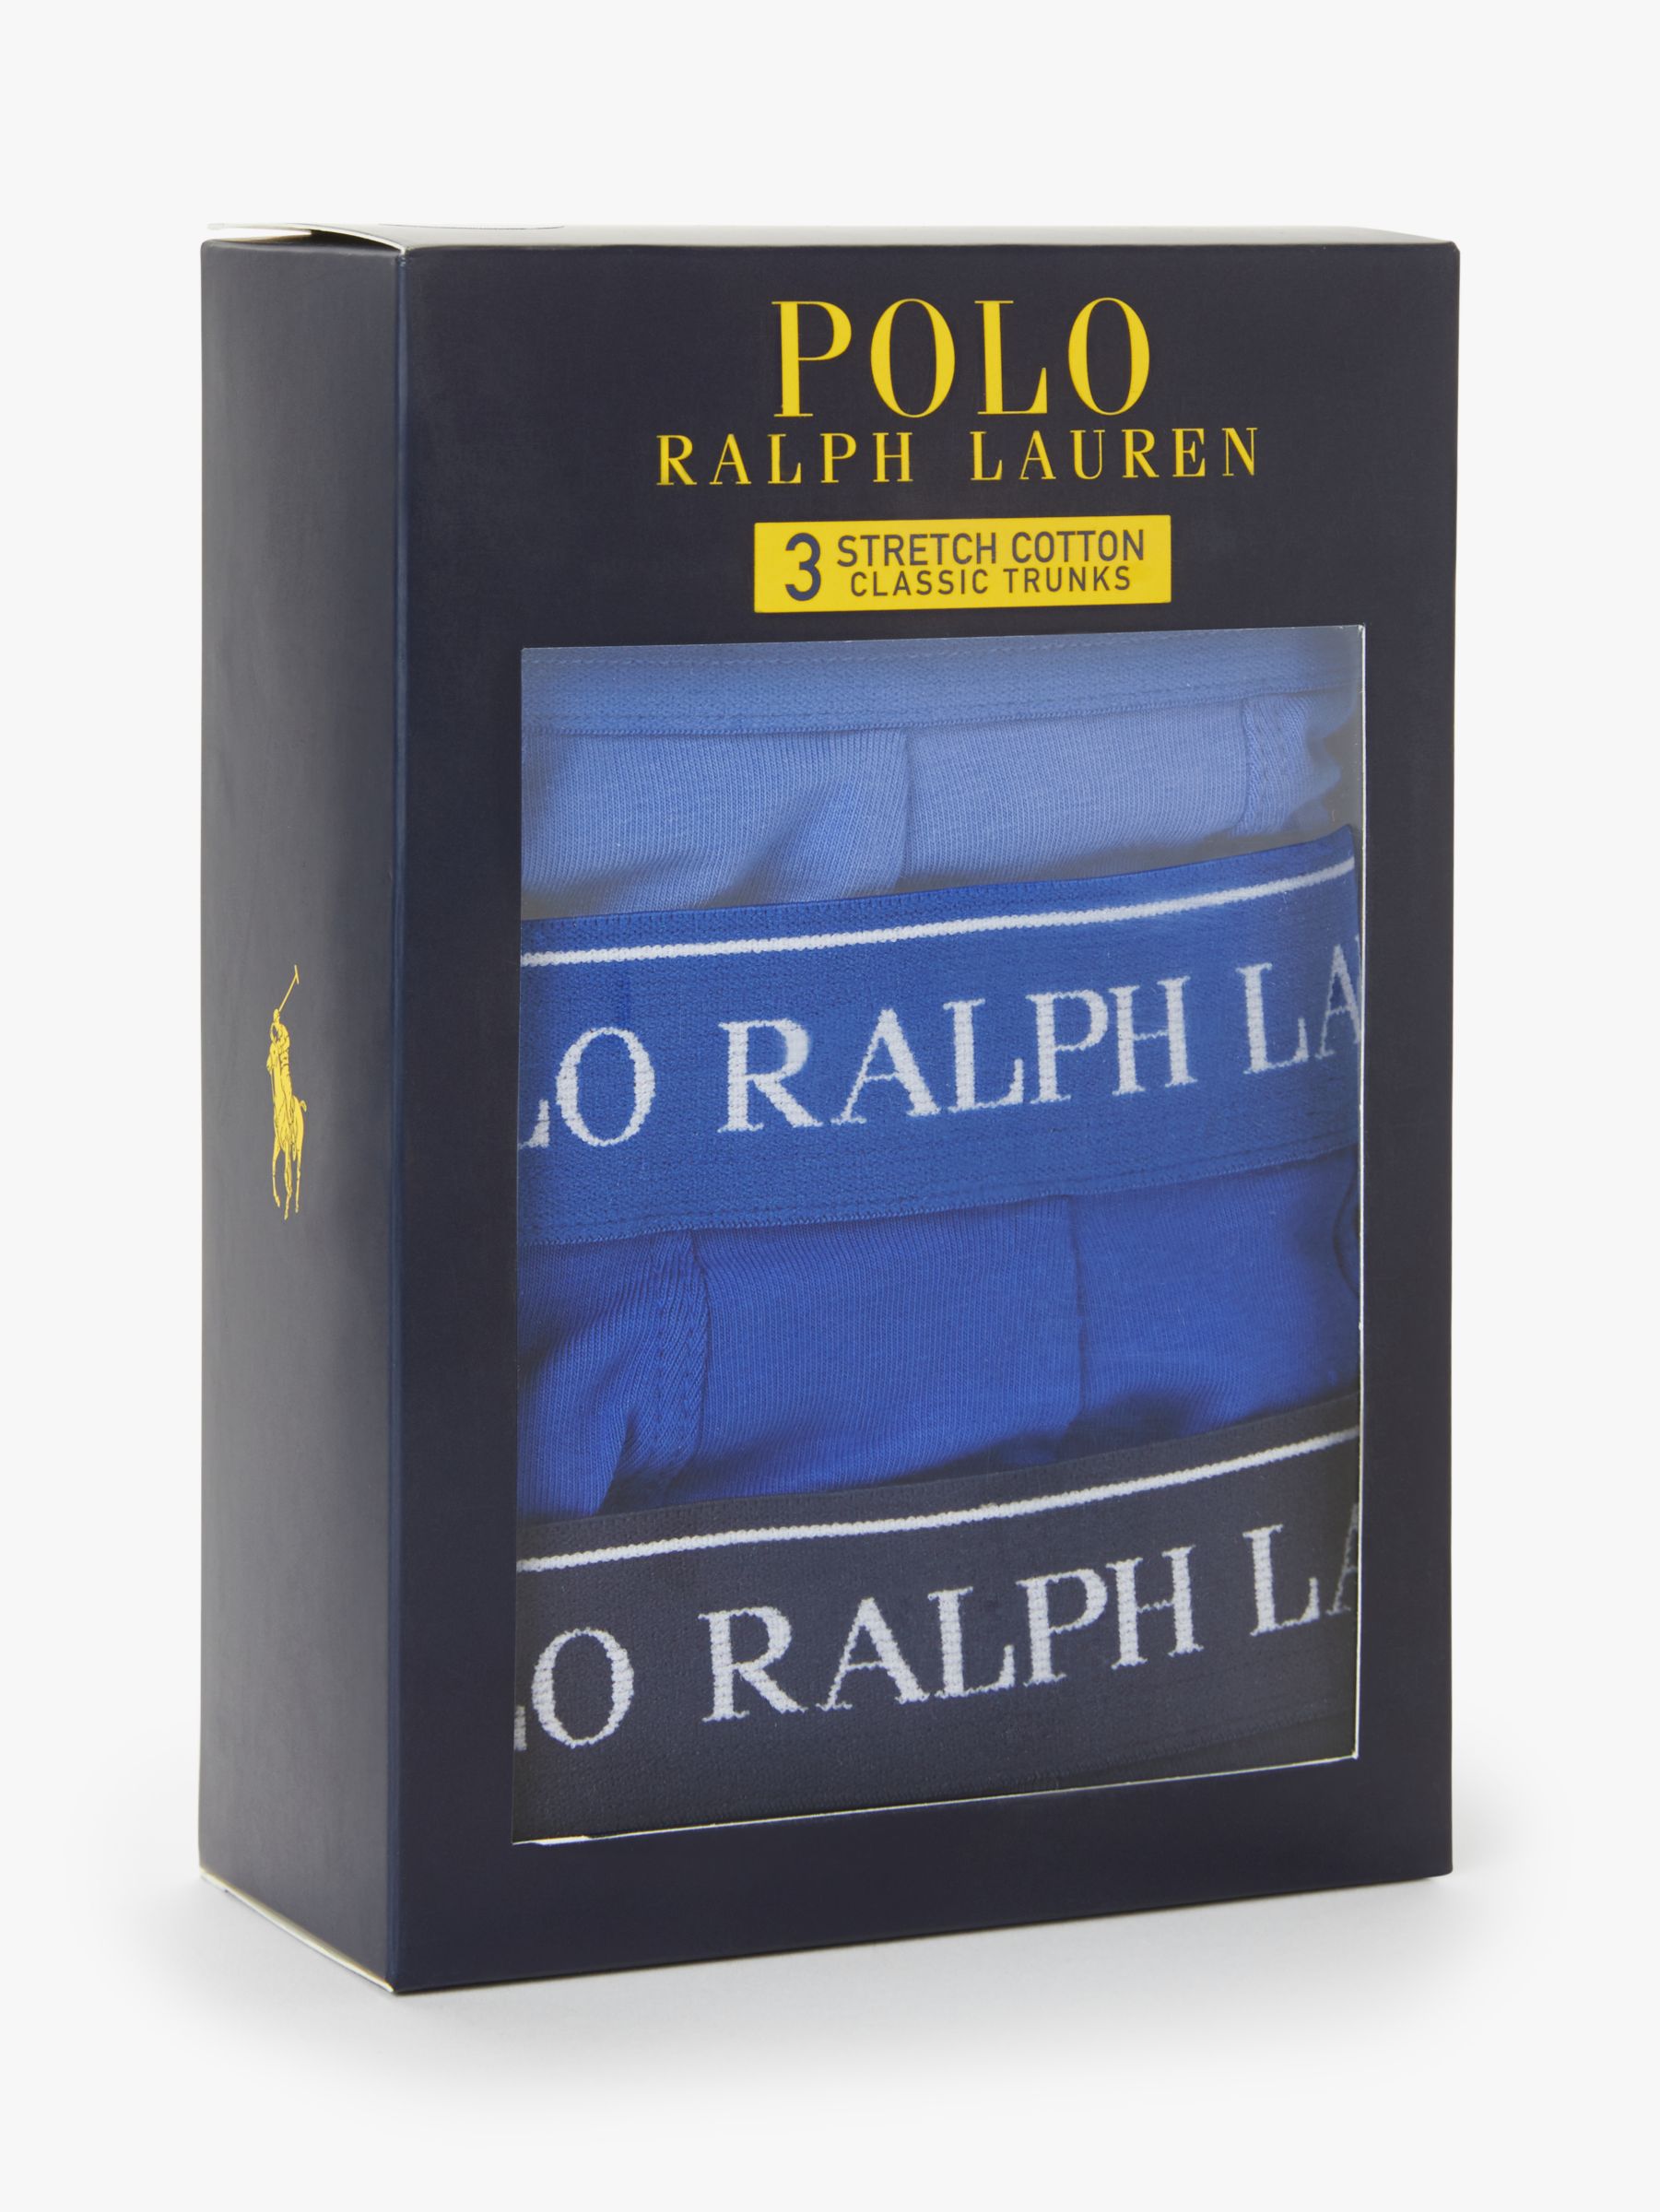 Polo Ralph Lauren Contrast Waistband Trunks, Pack of 3, Blue, L